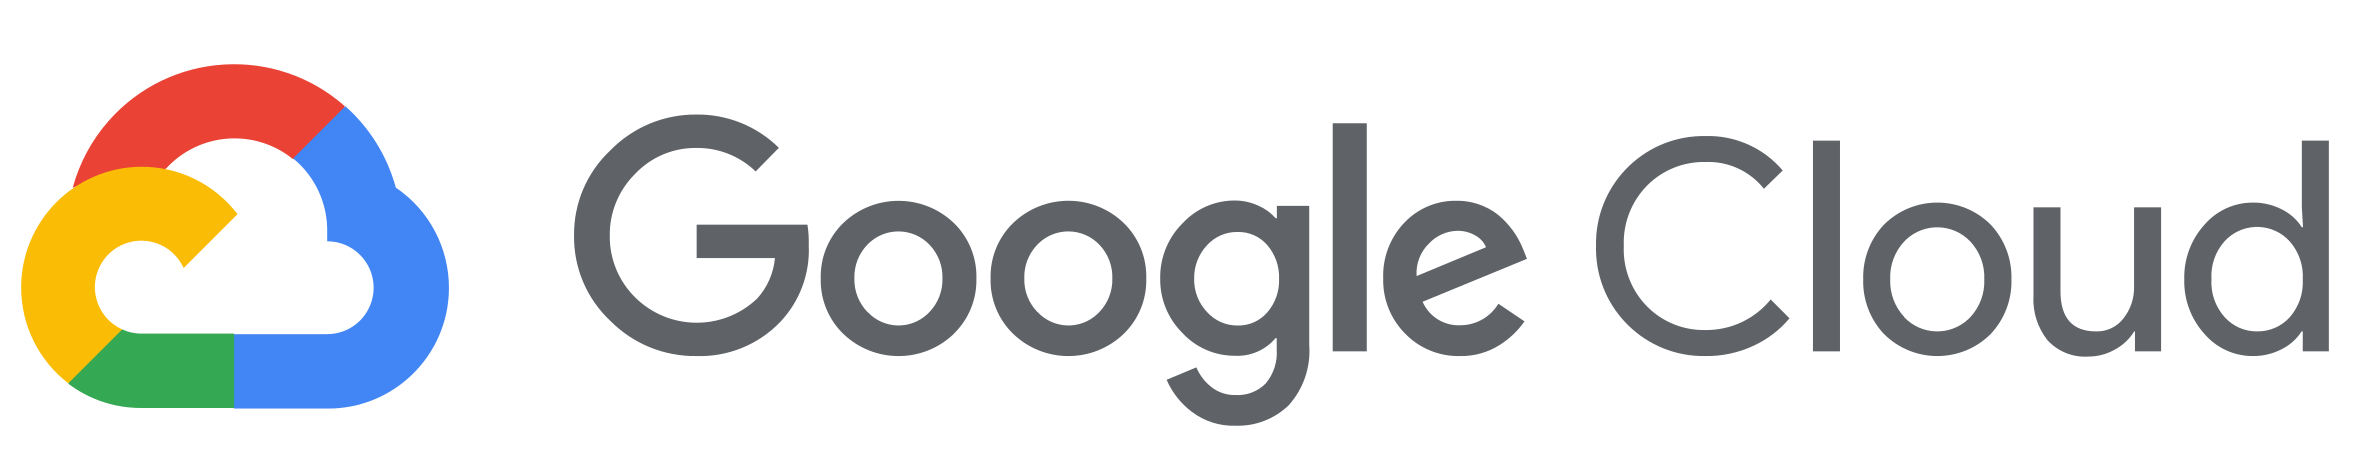 Google Cloud platform logo